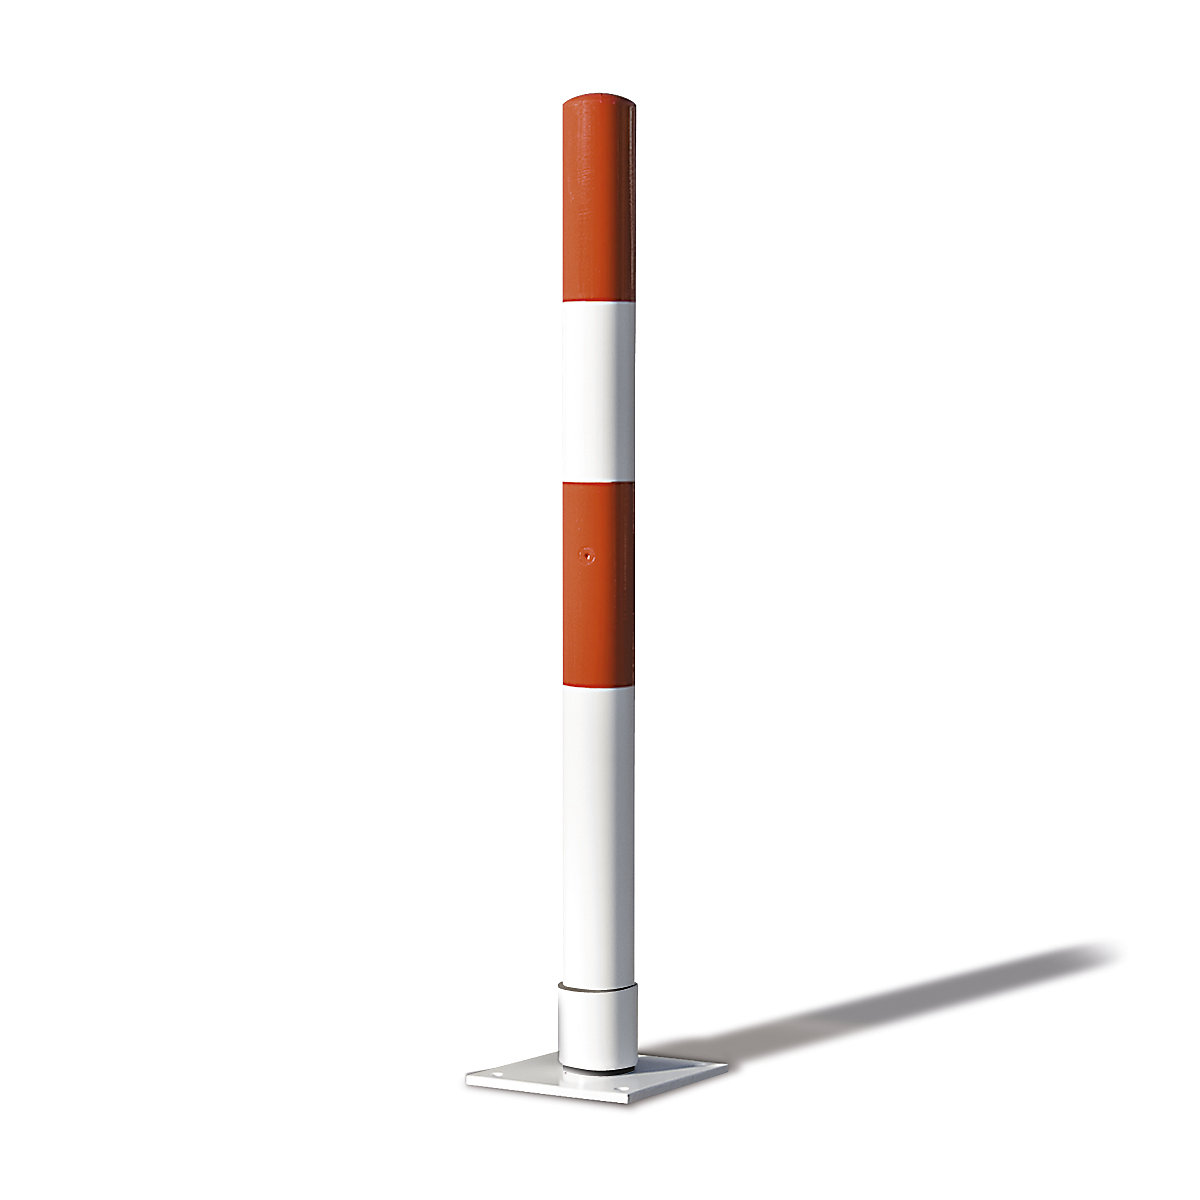 Poste barrera de tubo de acero, flexible, Ø 76 mm, para encementar, rojo / blanco